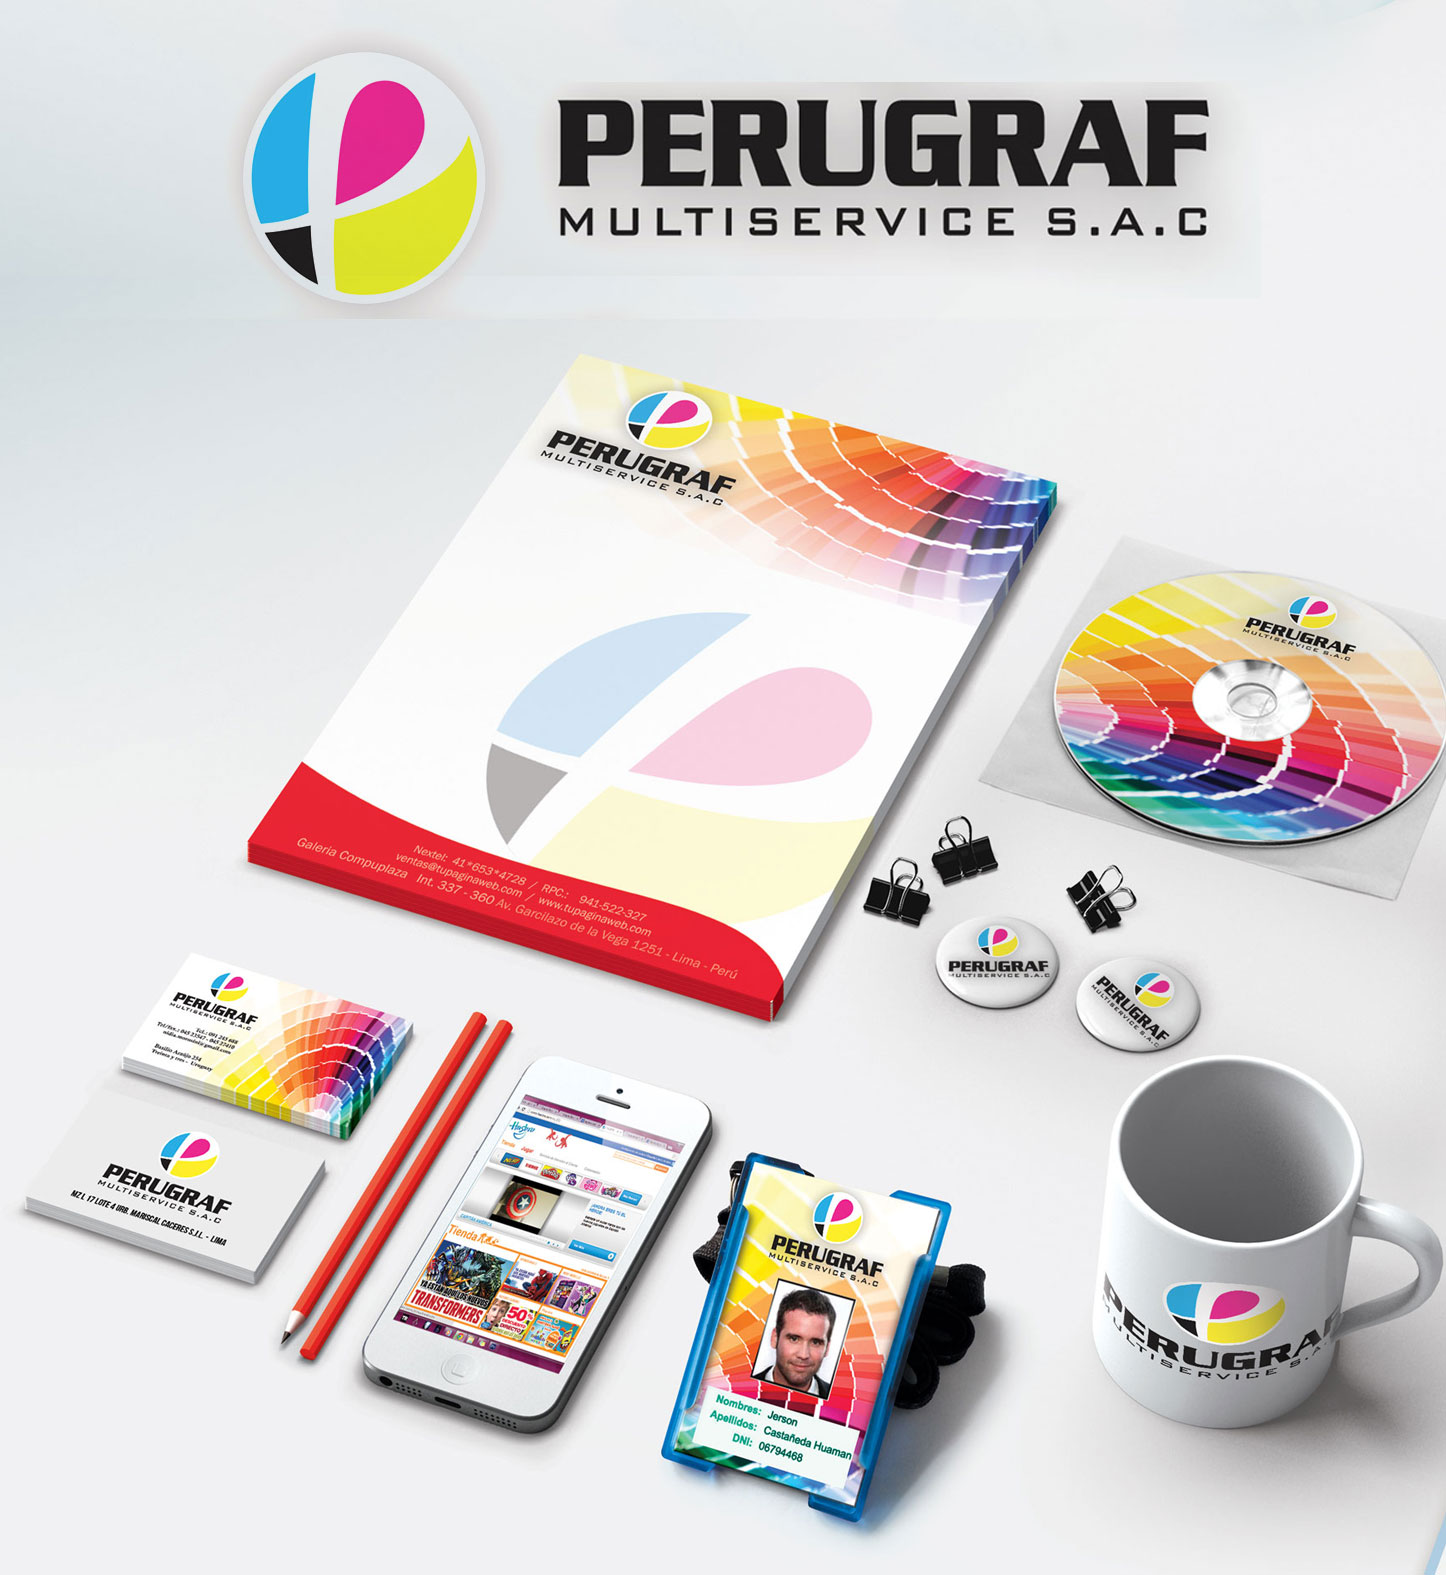 Perugraf- Respira web paginas web Lima - Peru